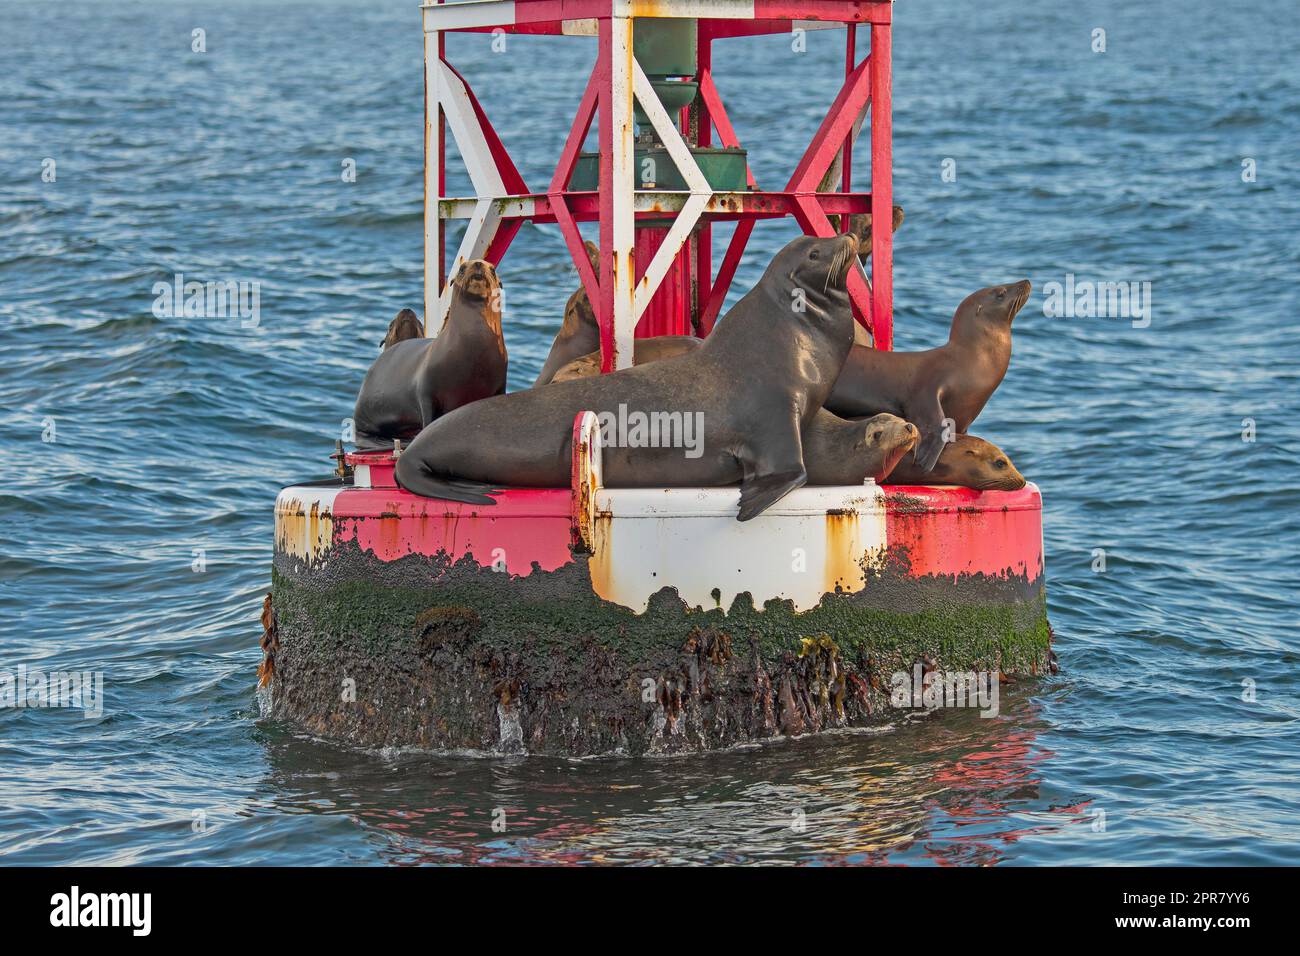 Kalifornische Seelöwen, die auf einer Boje hängen Stockfoto